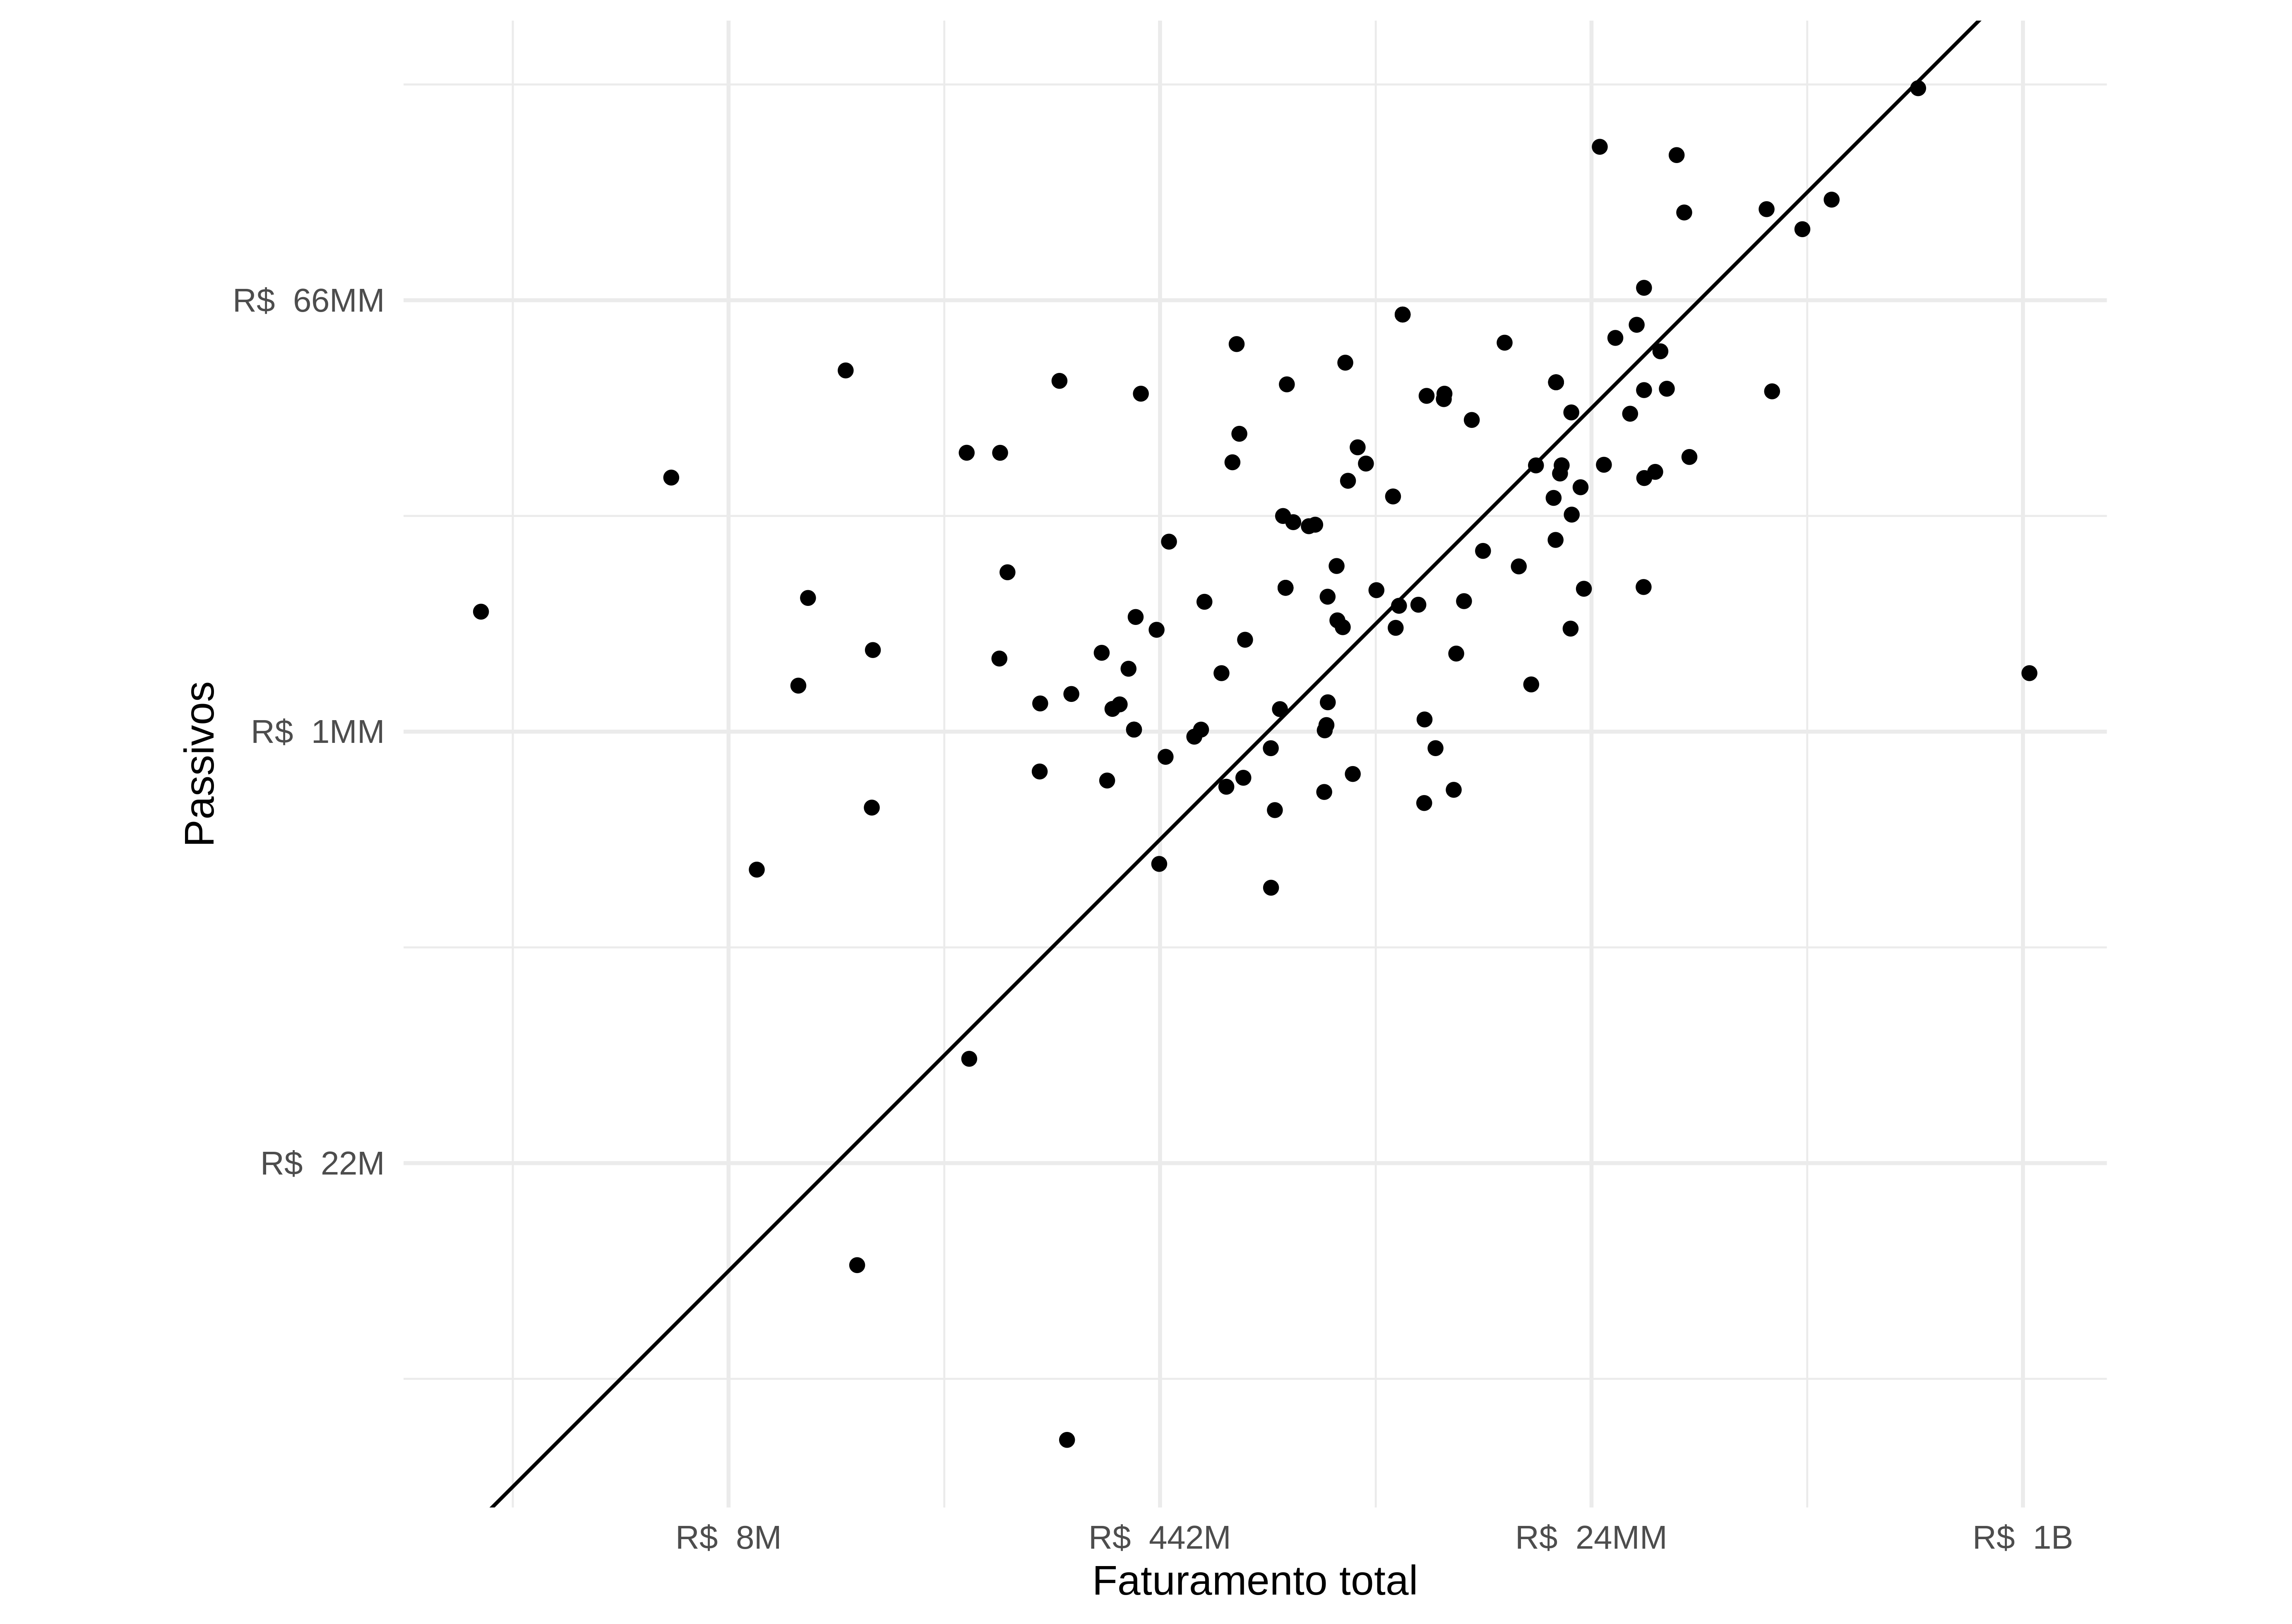 Comparação entre o faturamento total e o passivo das recuperandas no momento do pedido de recuperação (em escala logarítmica).